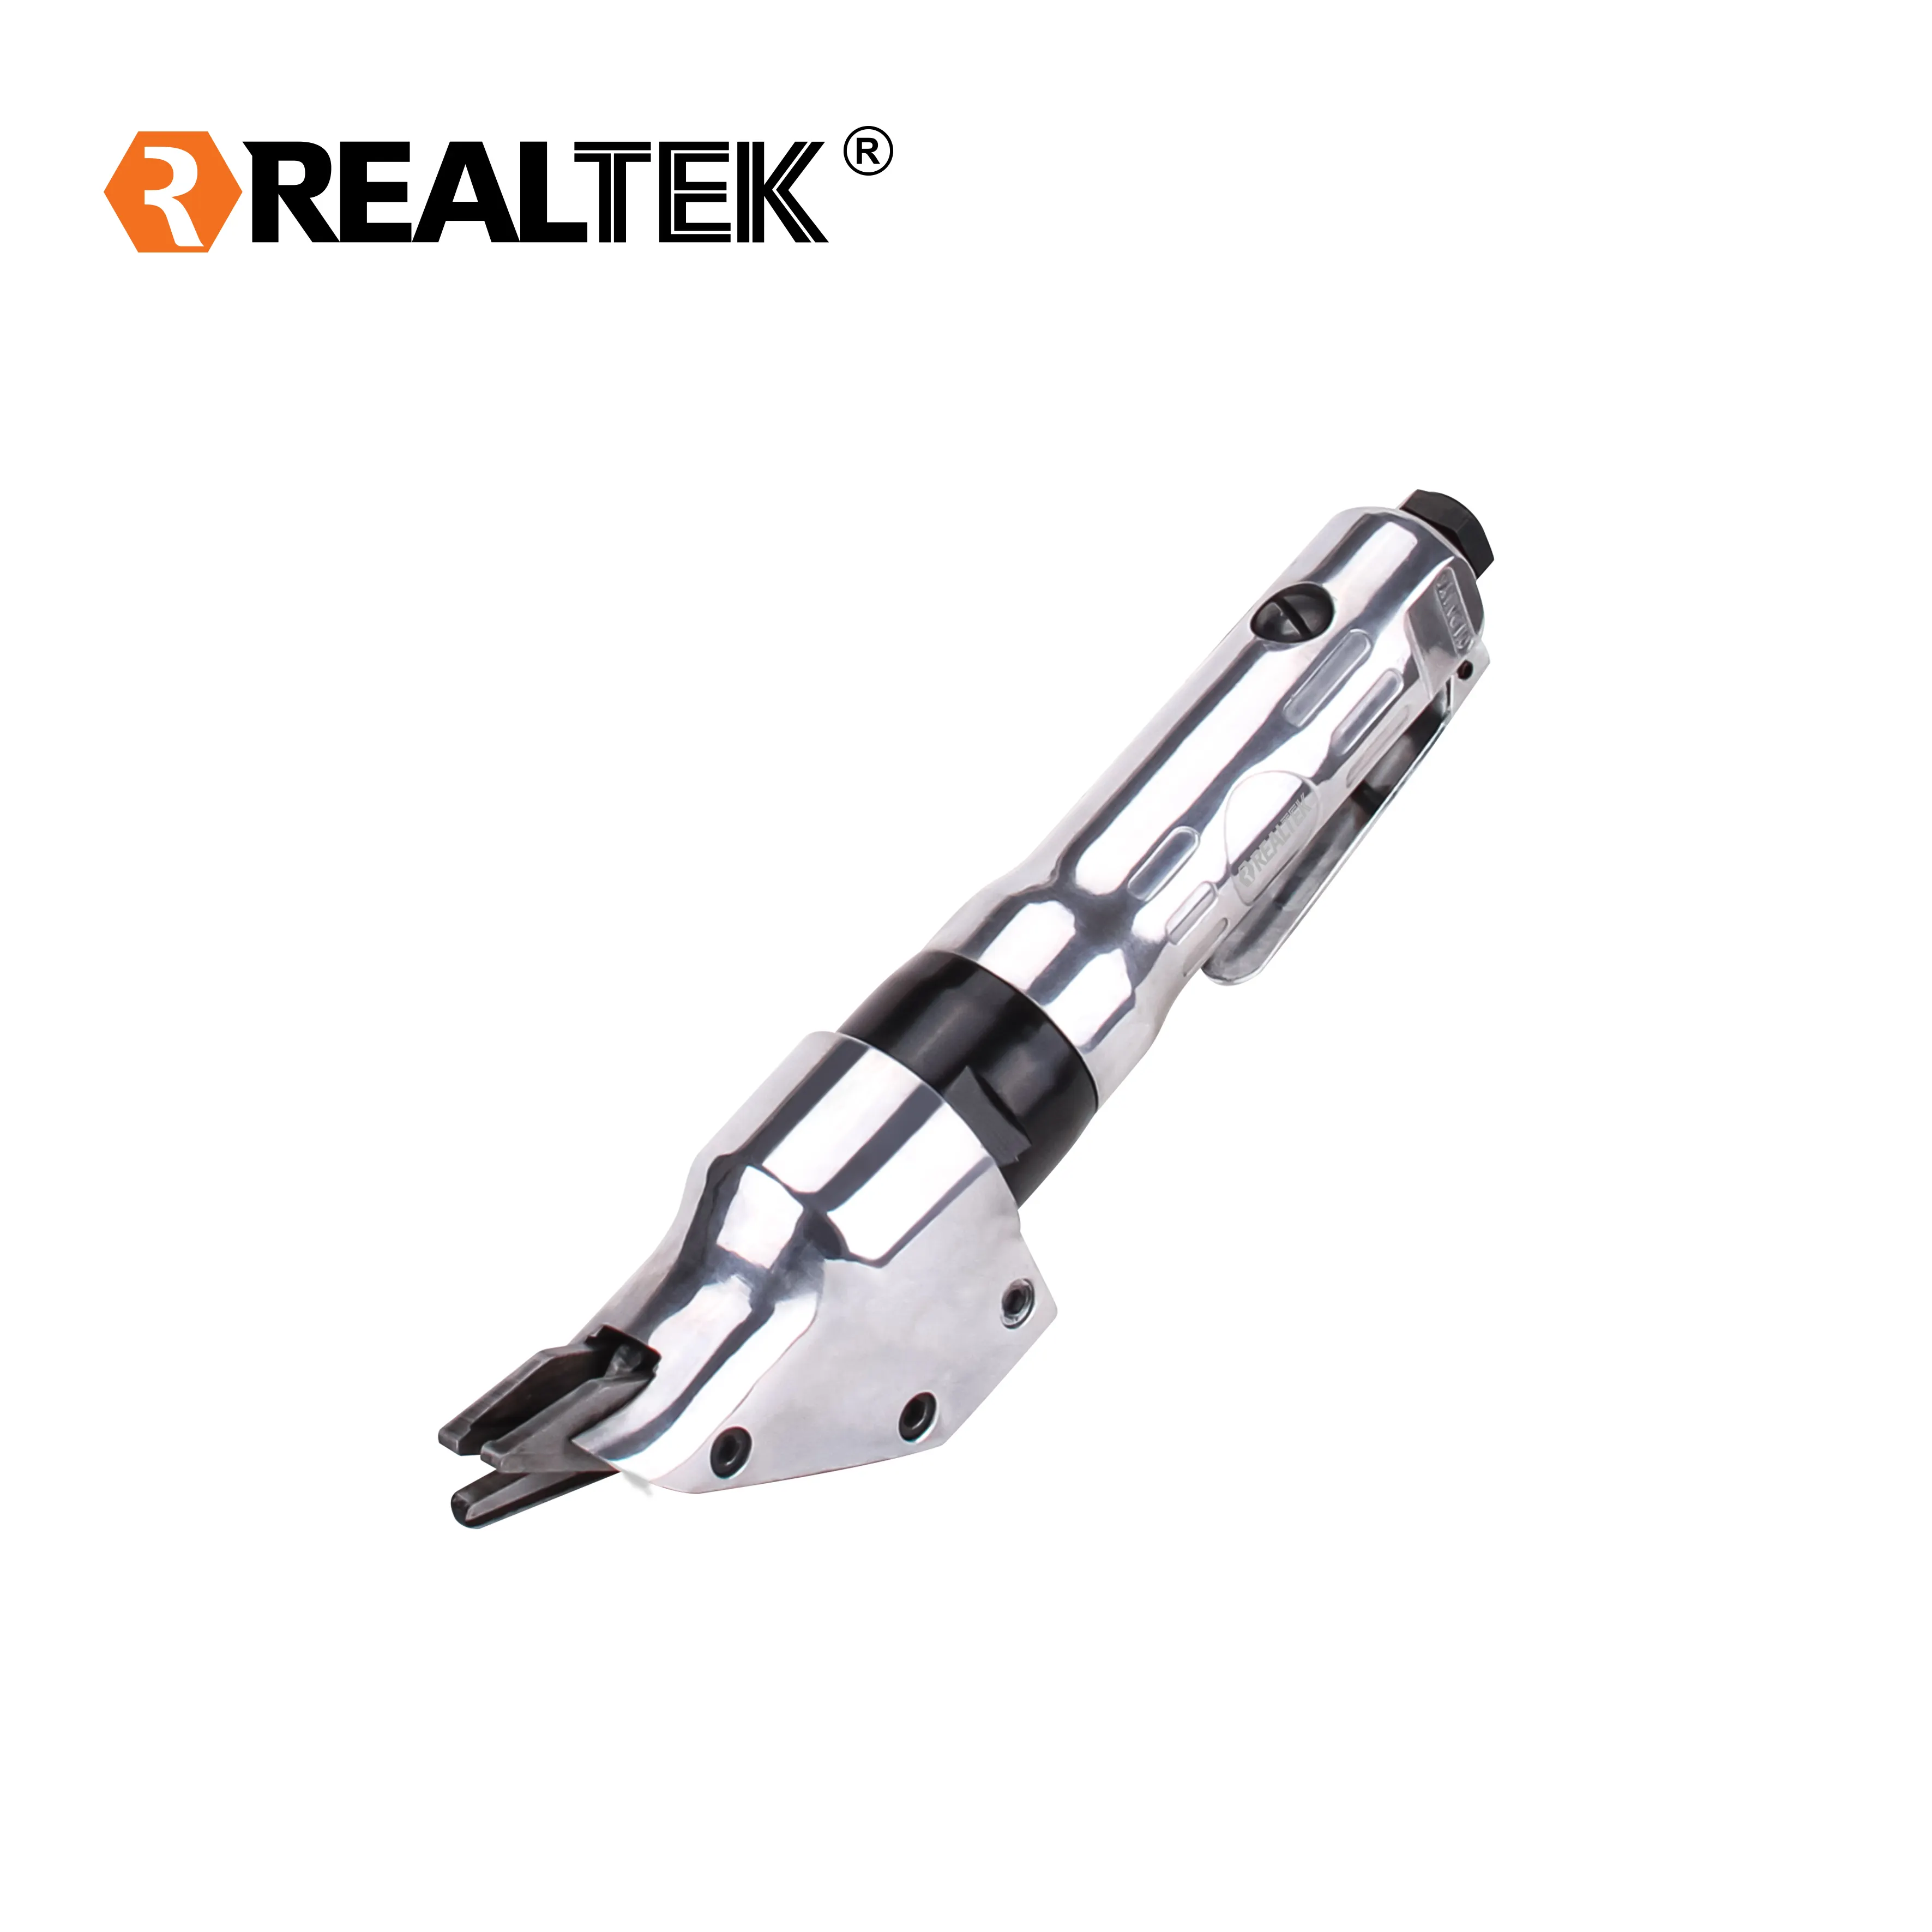 Realtek เครื่องตัดแผ่นโลหะกรรไกรลม2800รอบต่อนาทีใช้กันอย่างแพร่หลาย